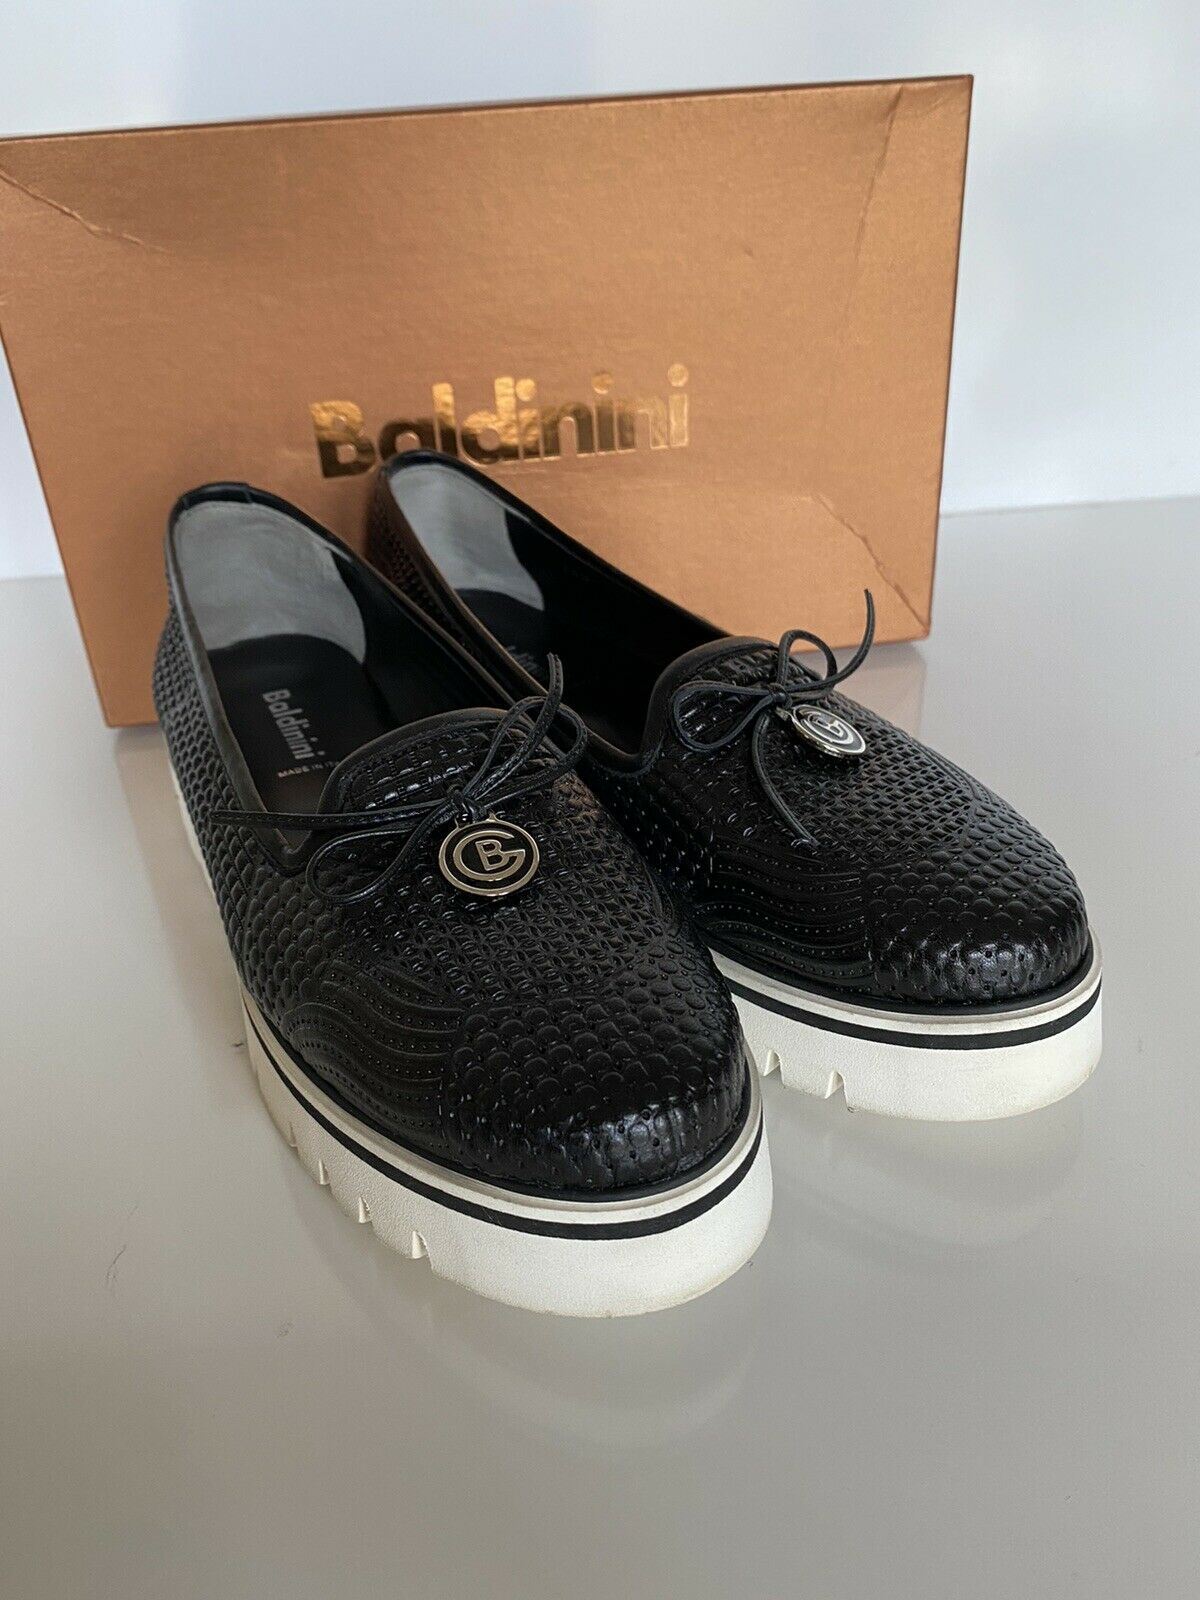 Baldinini Damen-Espadrilles aus schwarzem Leder, 39 Eu, hergestellt in Italien, 799156 